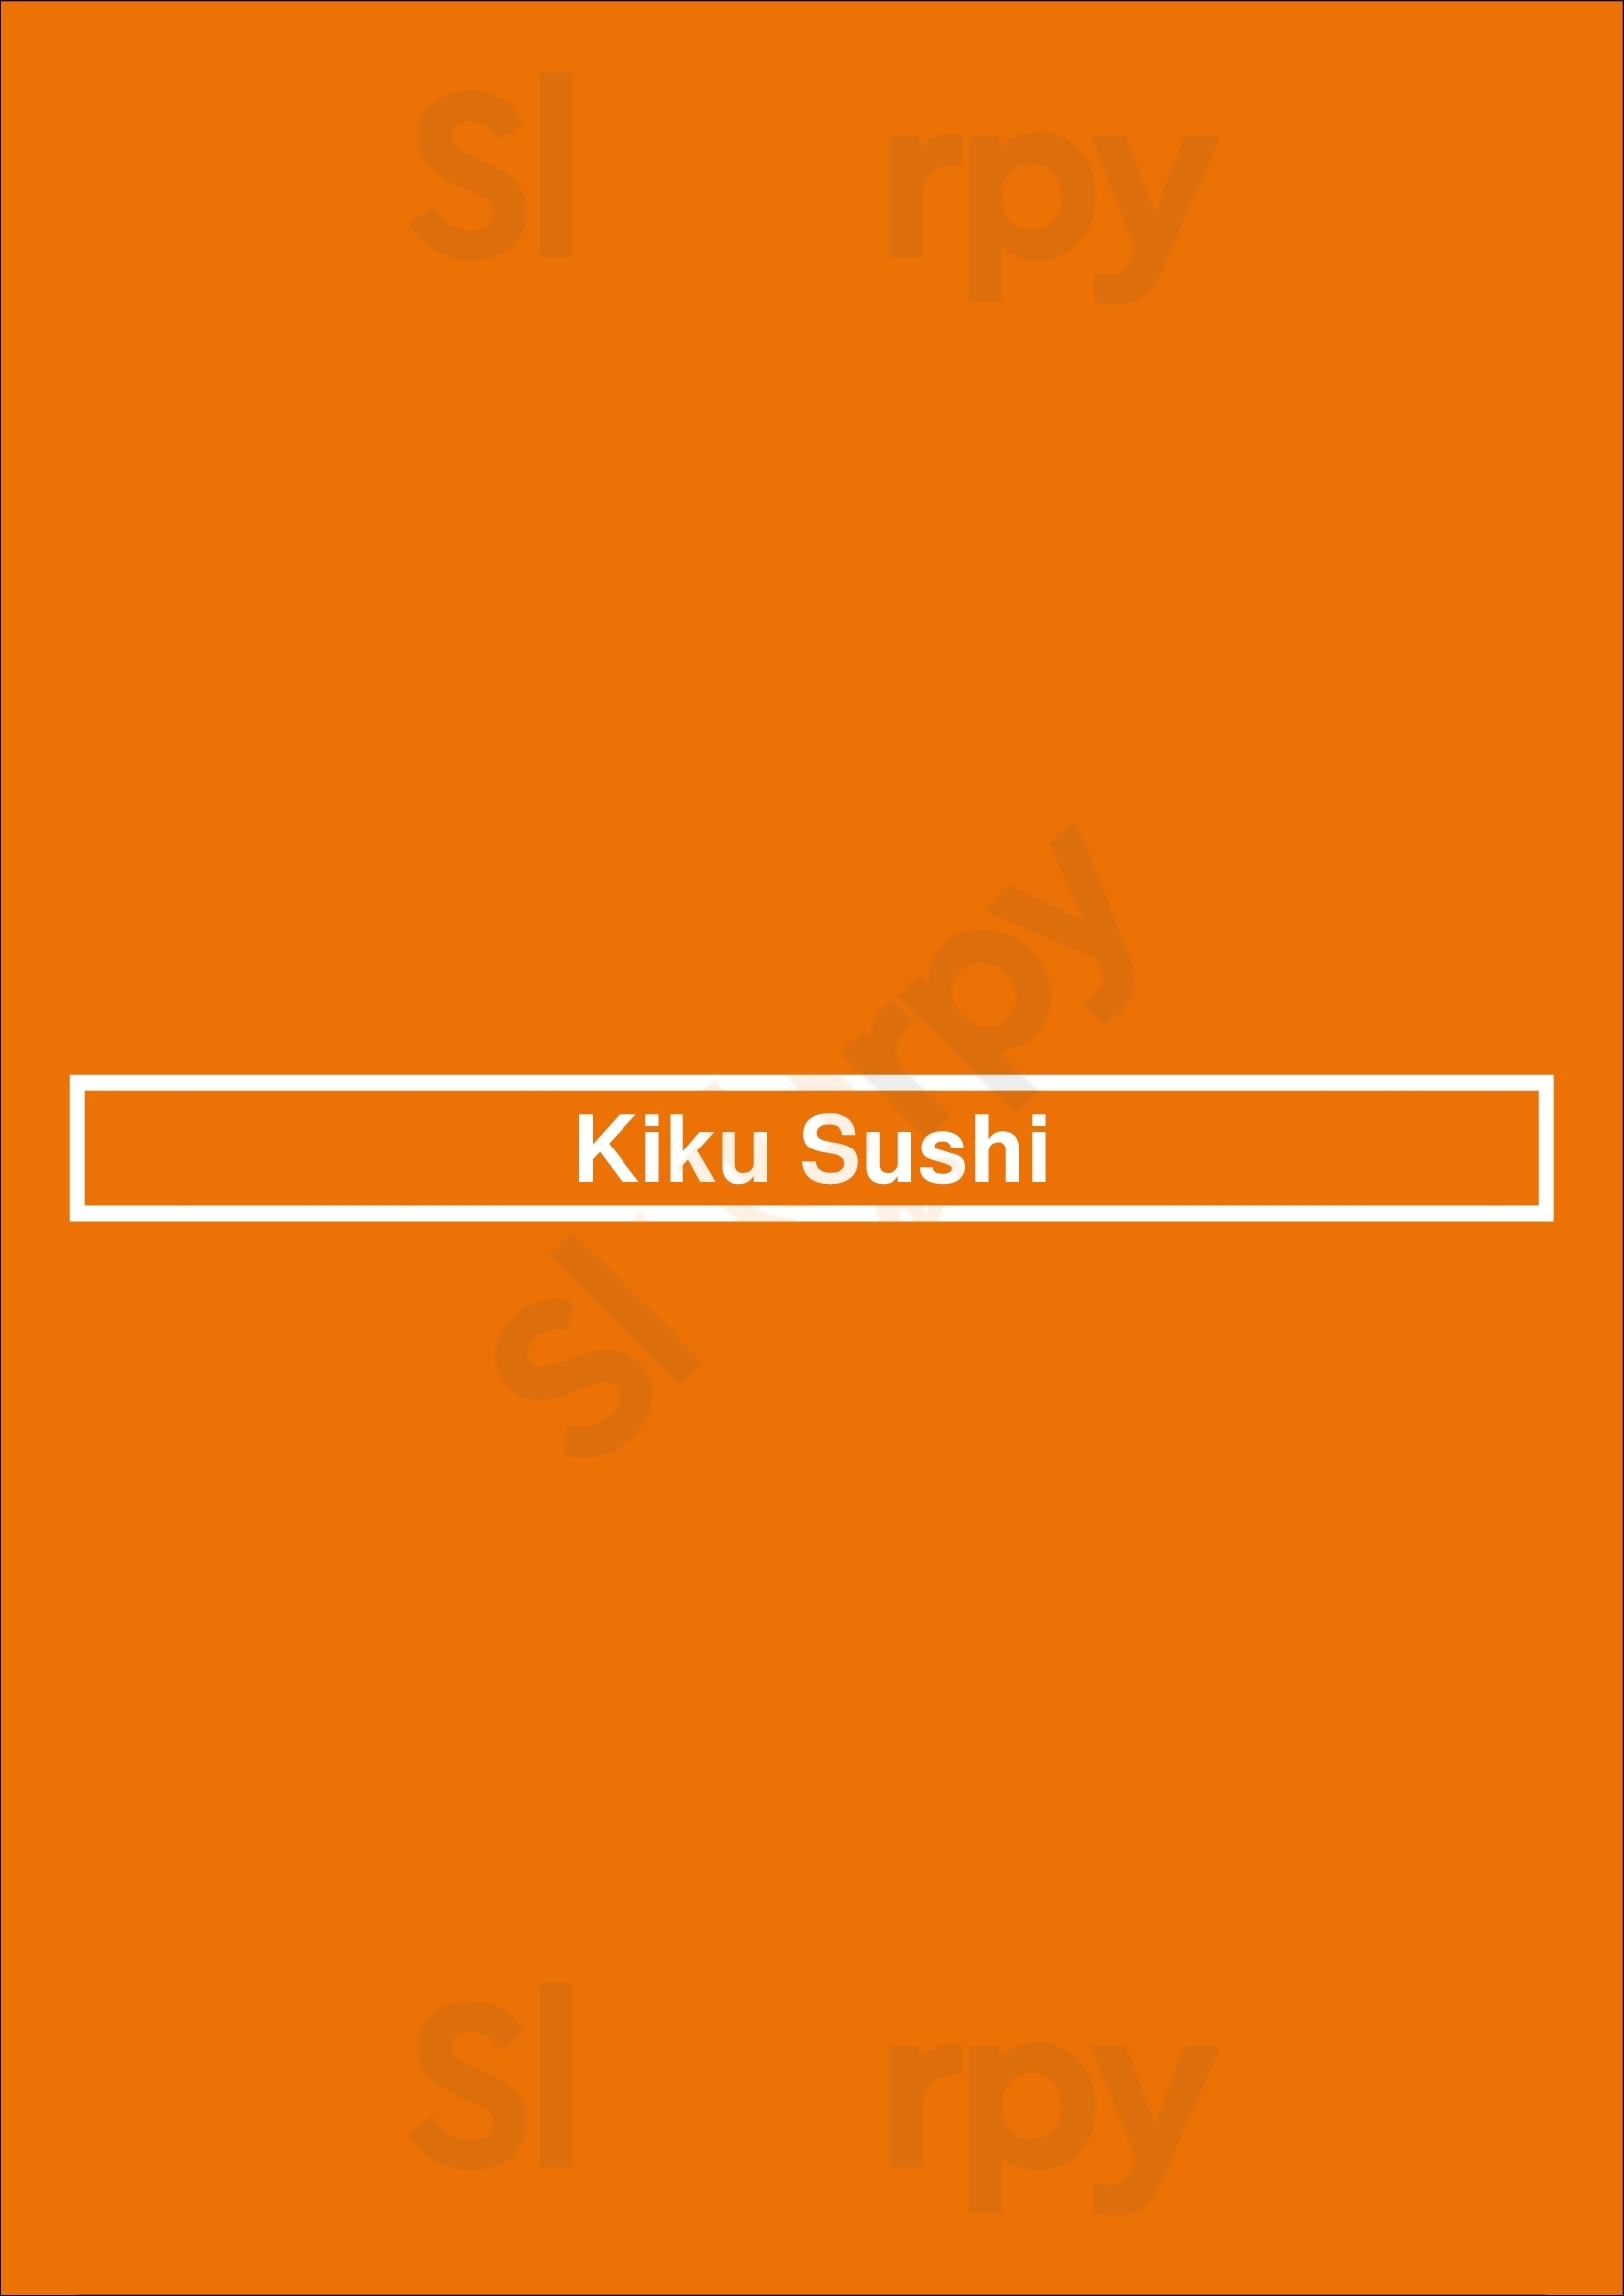 Kiku Sushi Vancouver Menu - 1